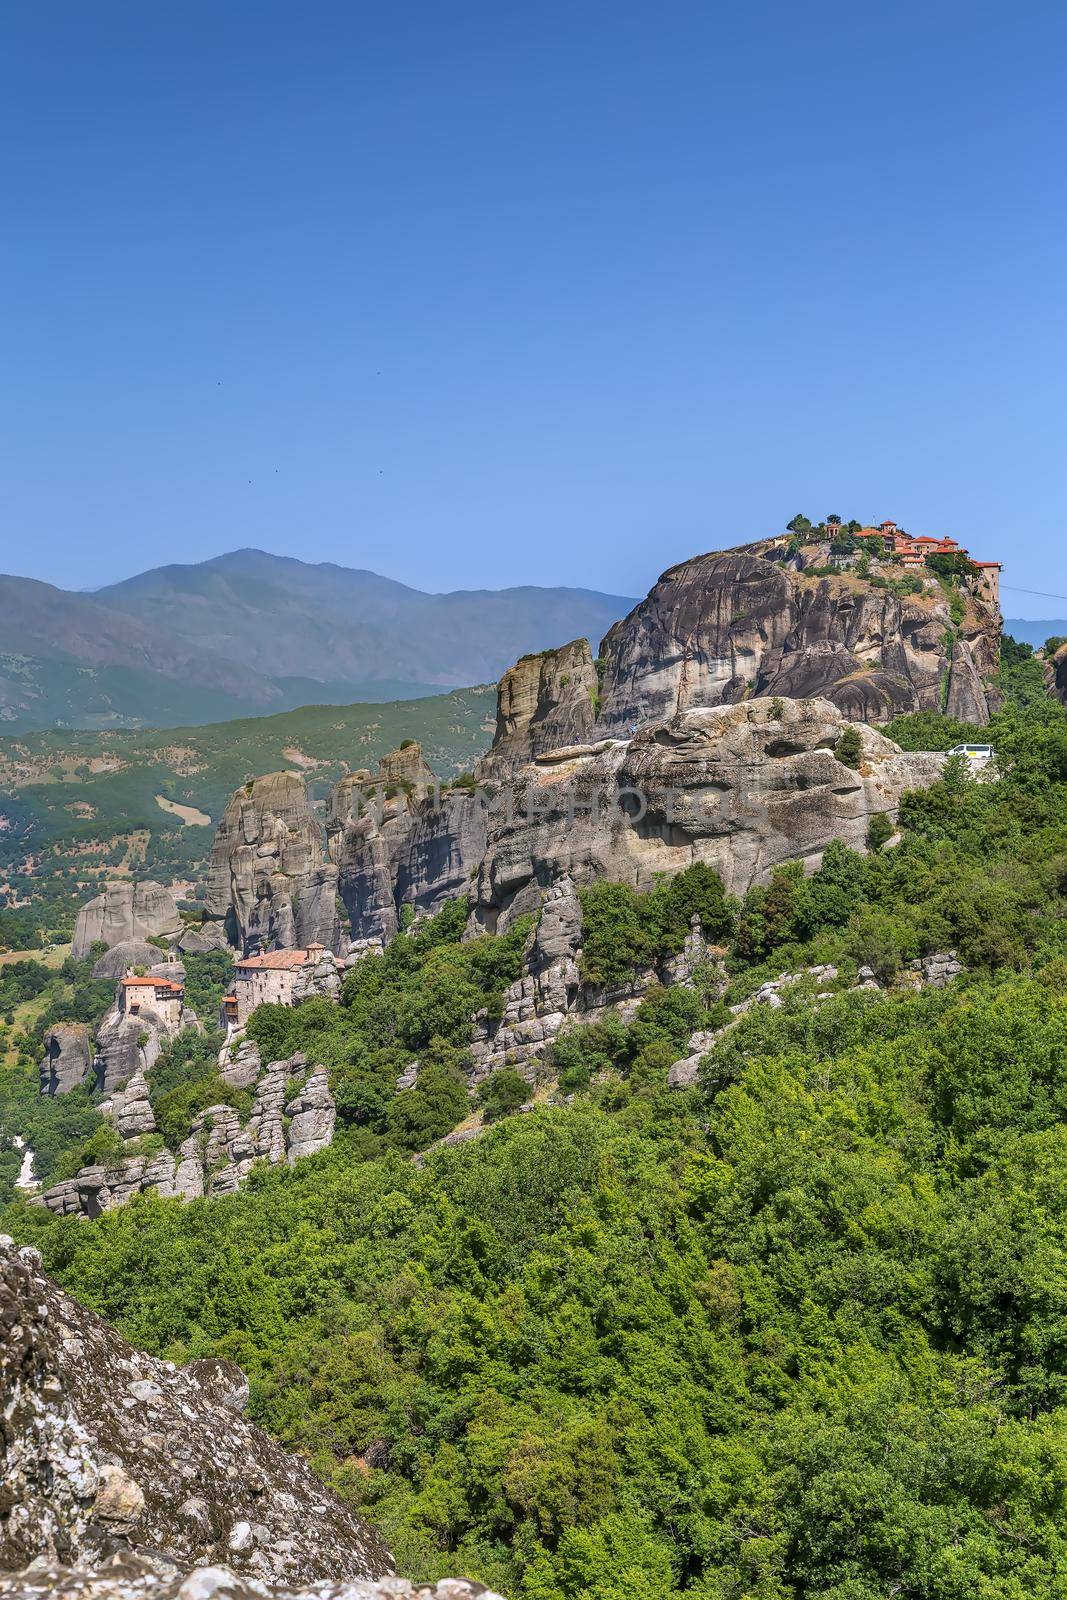 View of rocks in Meteora, Greece by borisb17